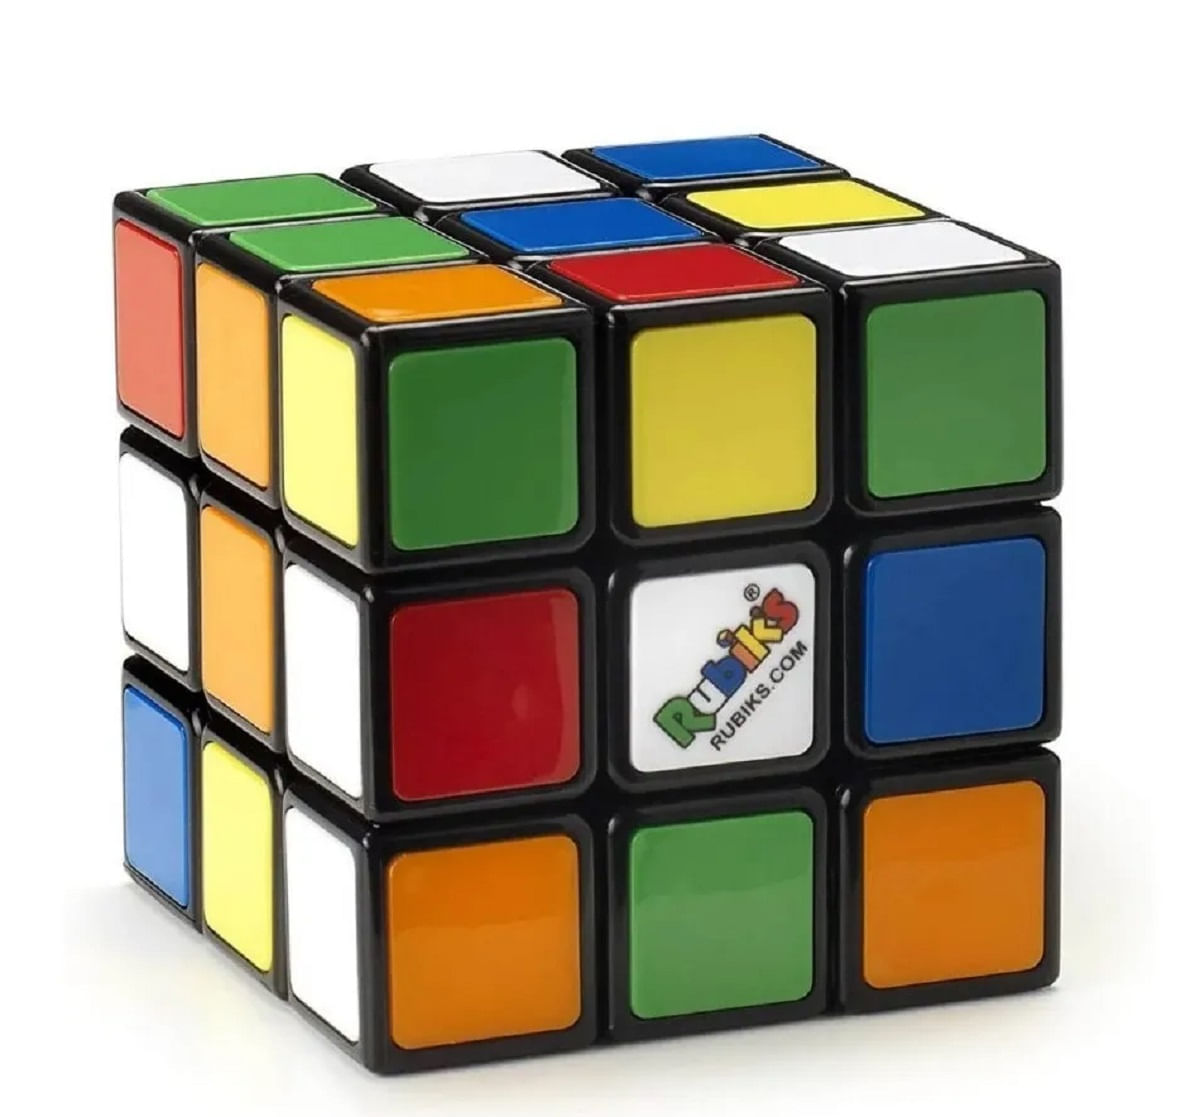 Caixa com 4 cubos mágicos de formas diferentes! Brinquedo que estimula o  raciocínio.